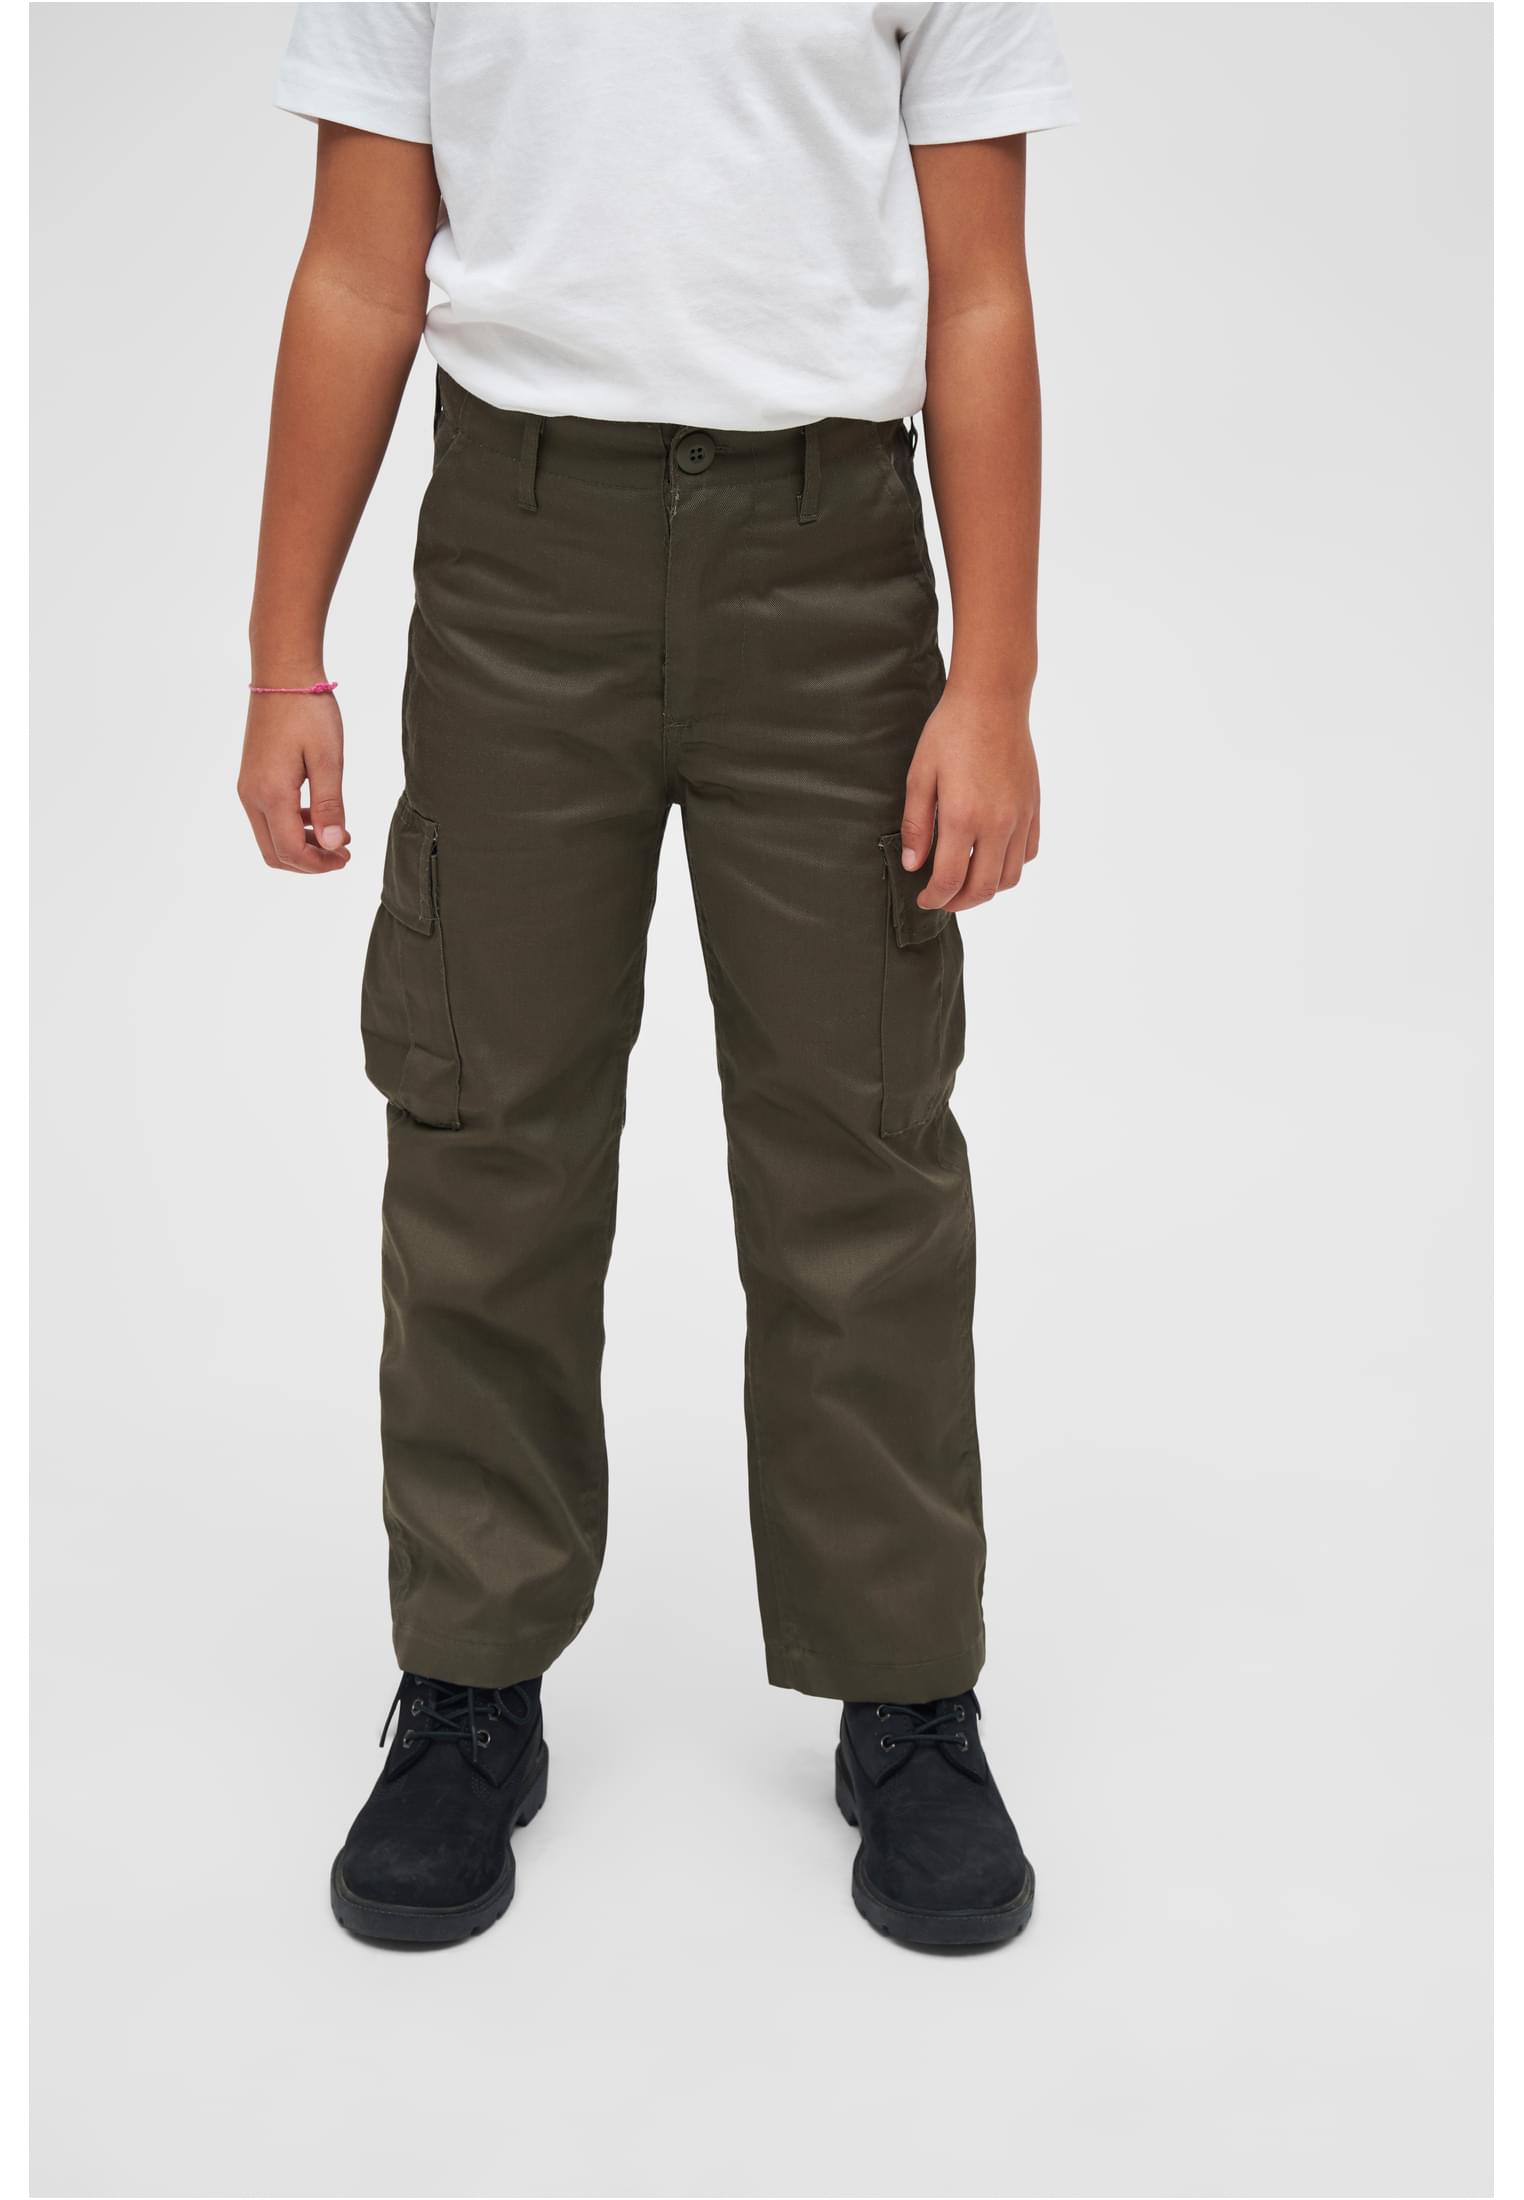 Brandit Kids US Ranger Trouser